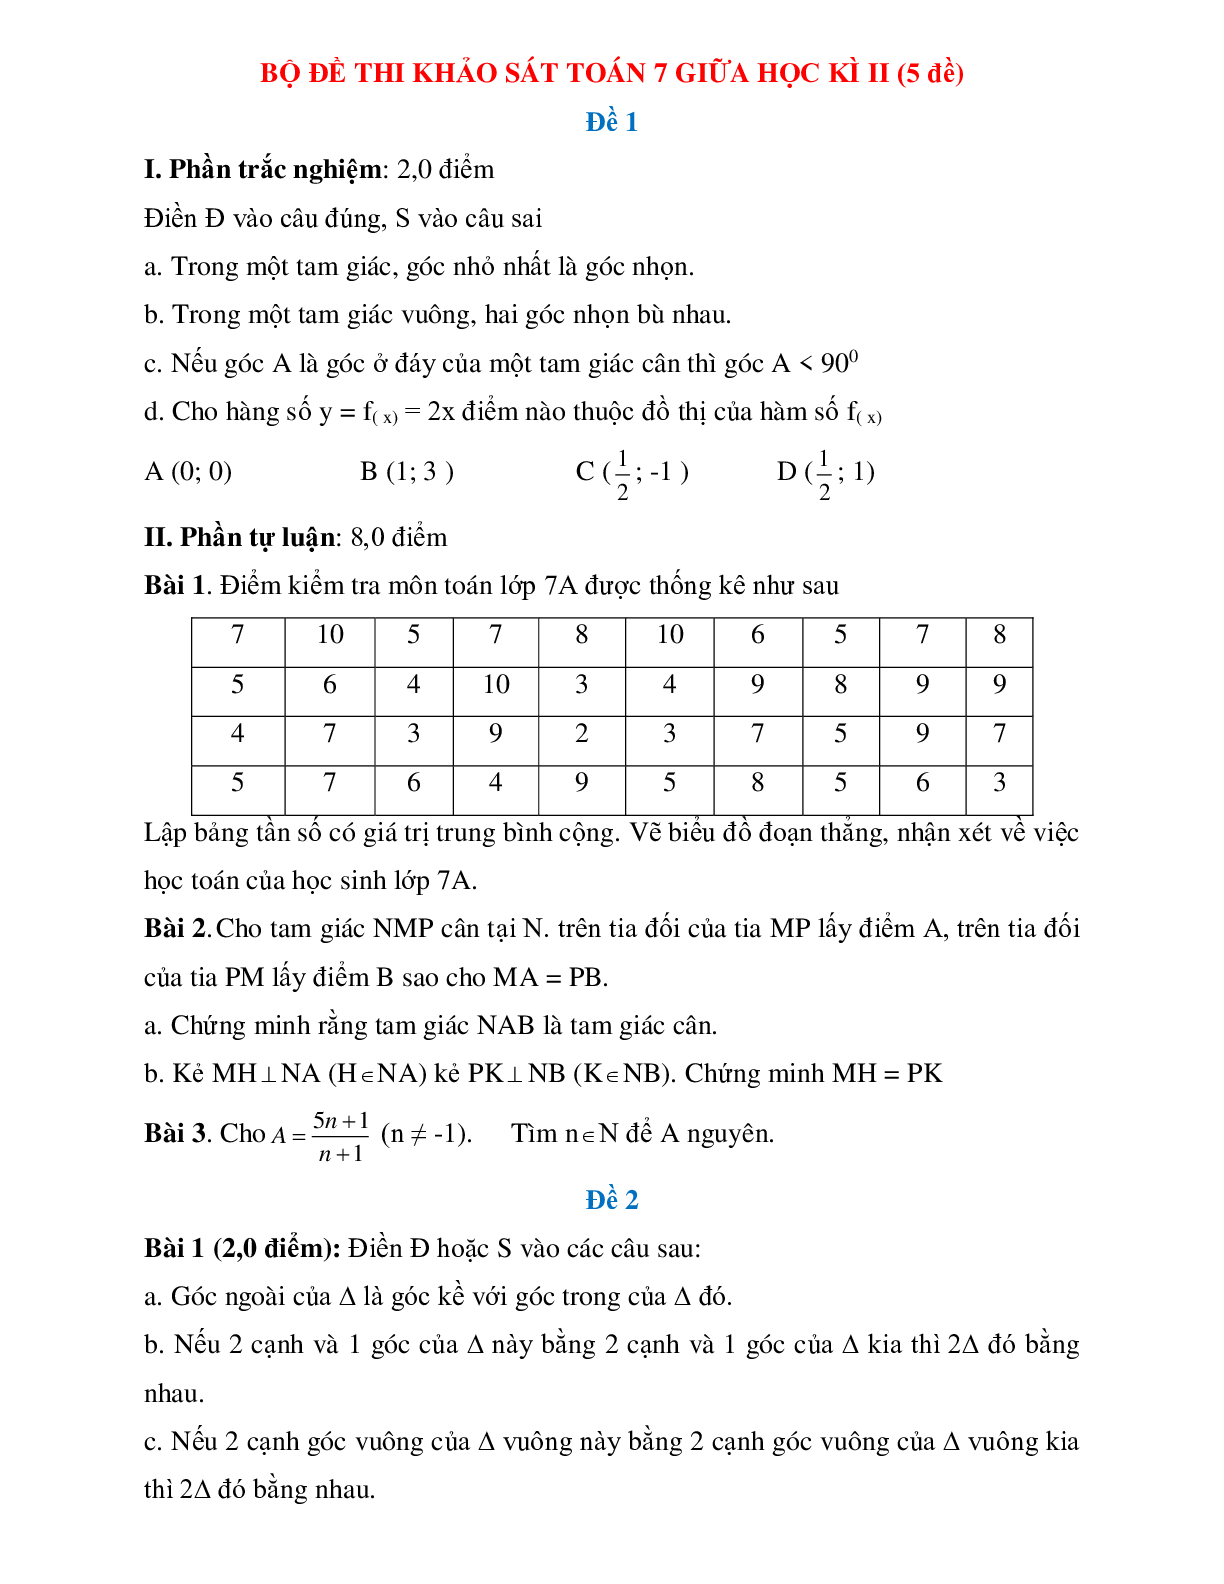 Bộ đề thi khảo sát toán 7 giữa học kì 2 (5 đề) (trang 1)